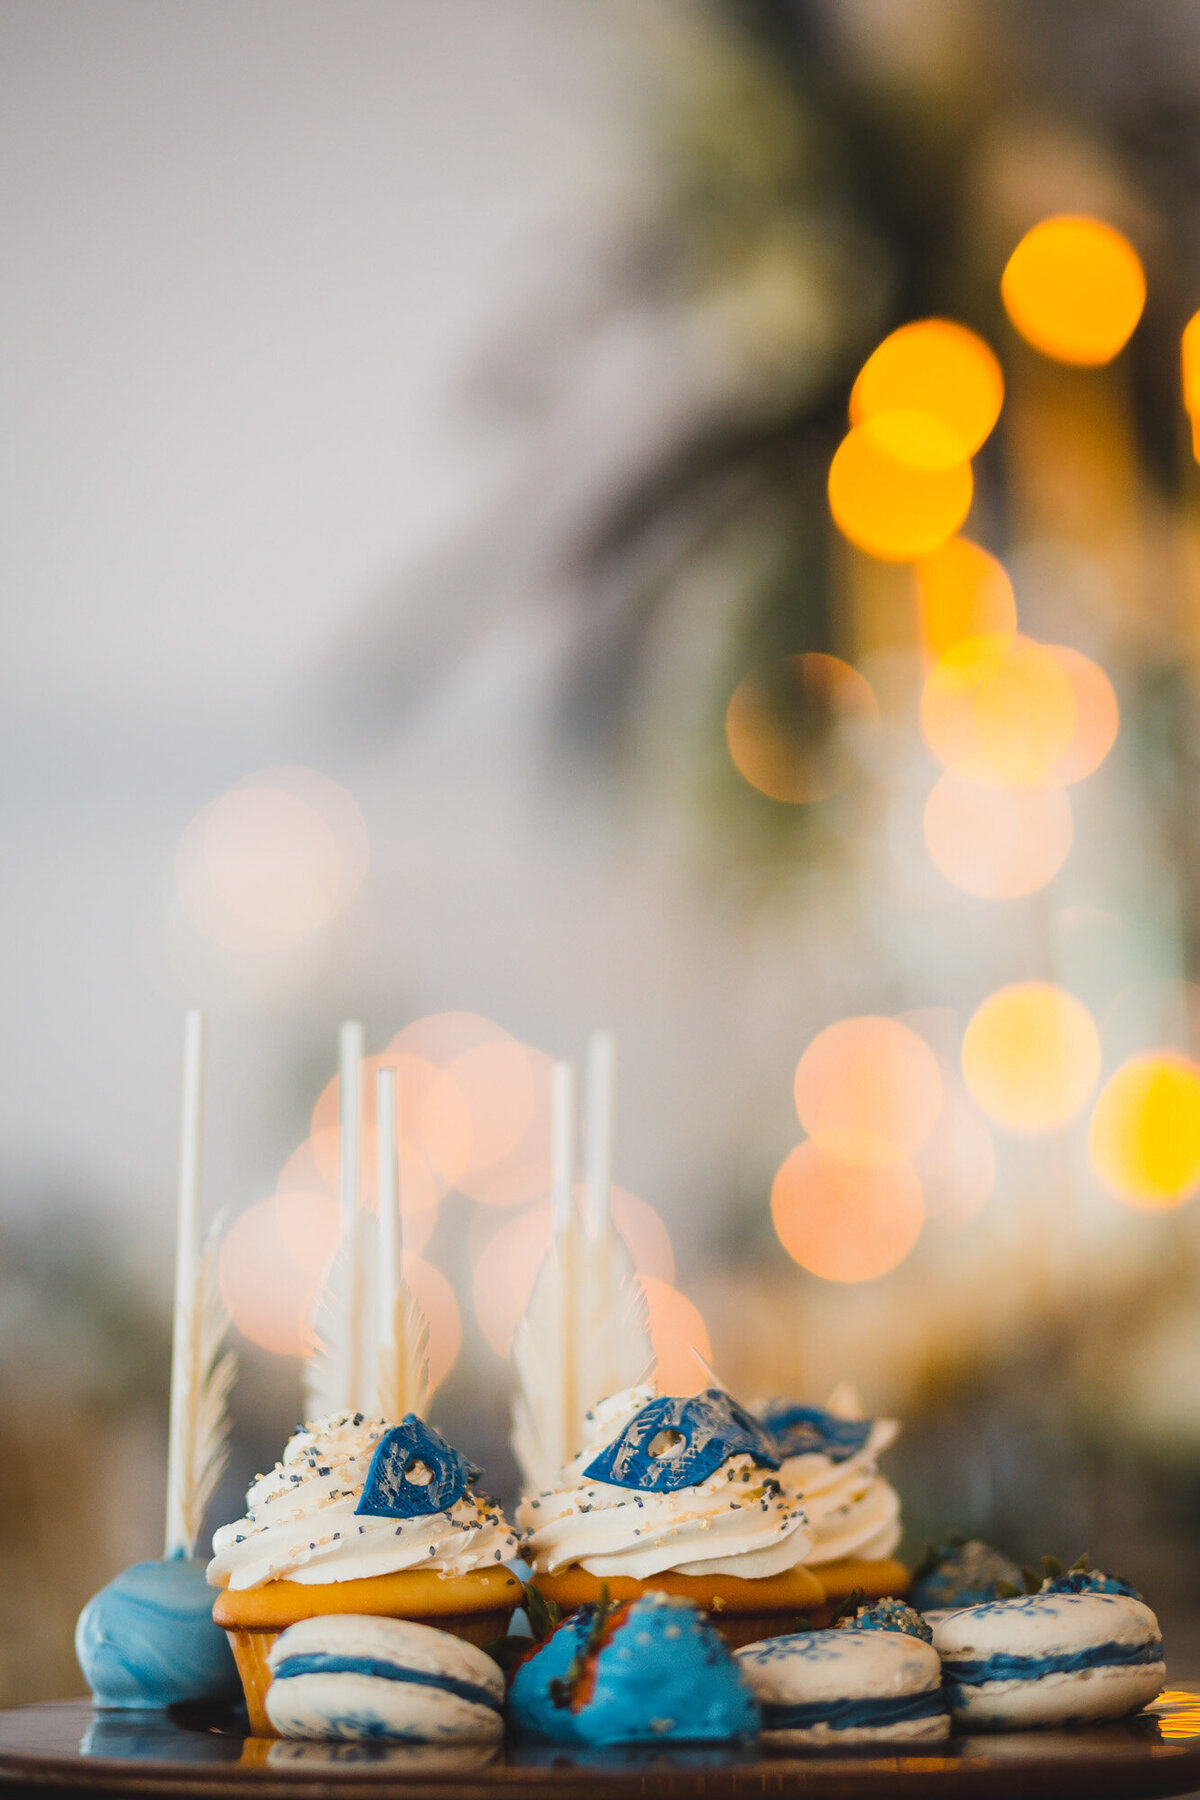 Wedding dessert in blue